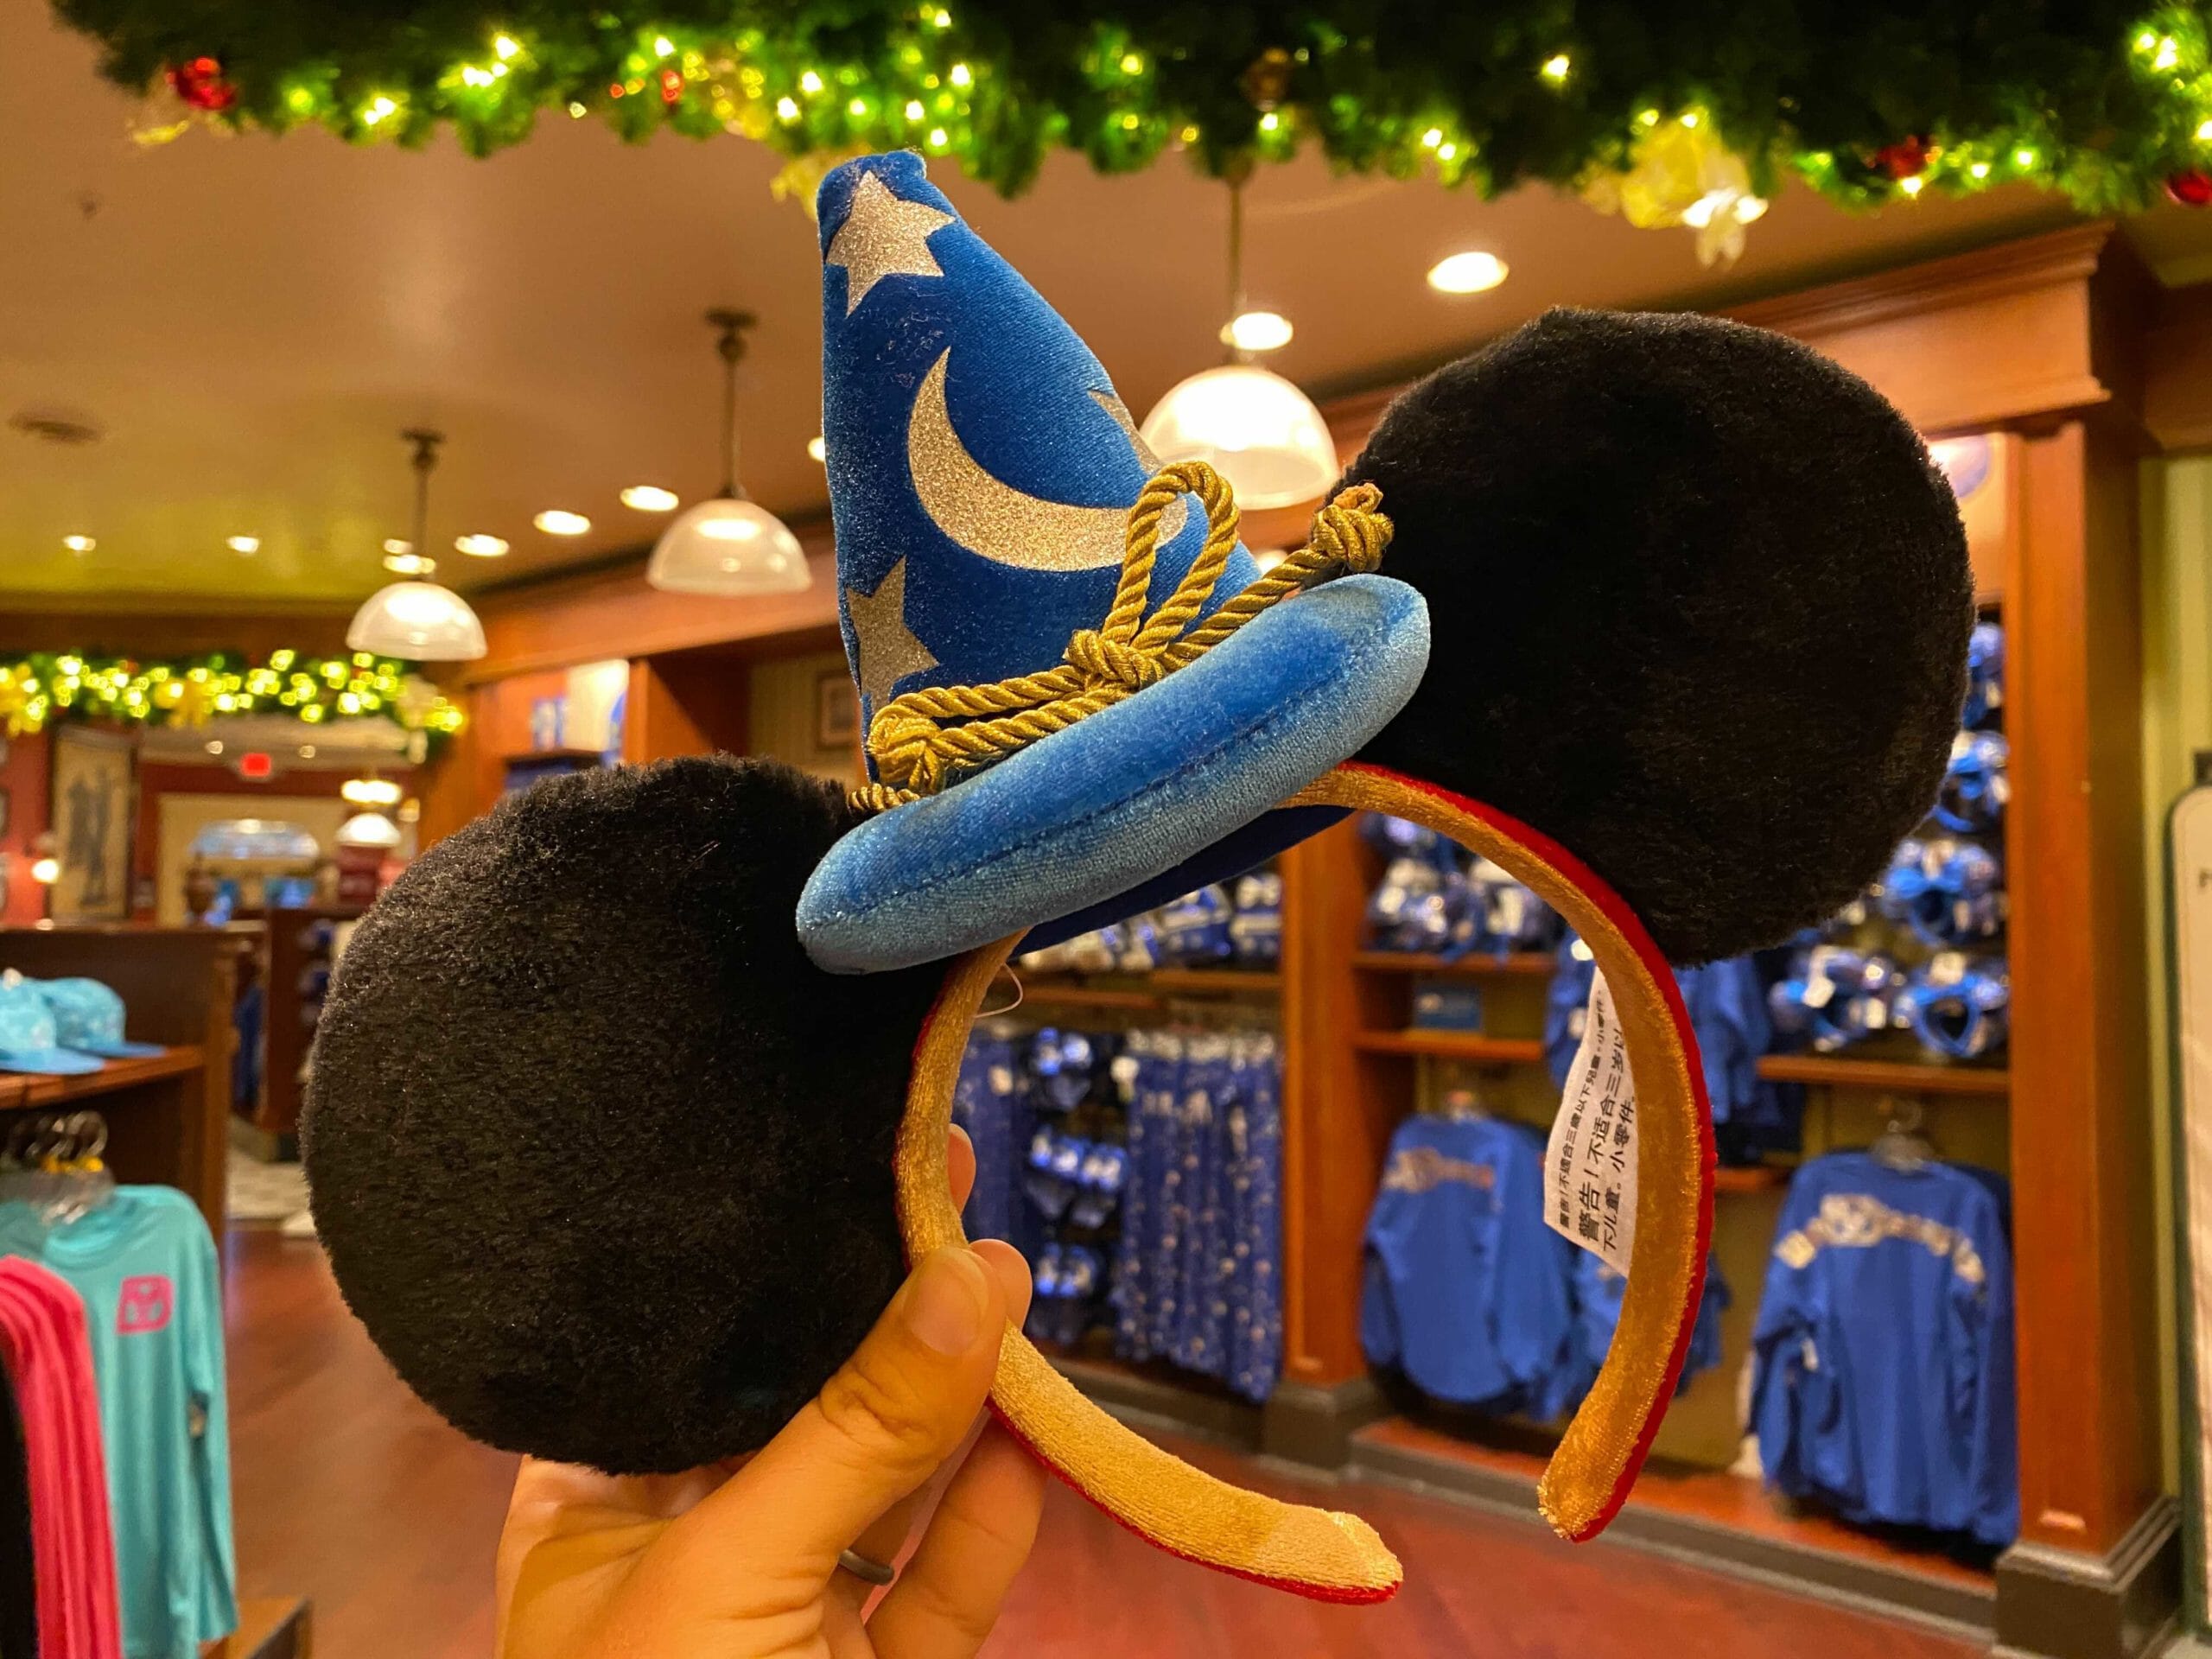 New Santa Mickey Mouse Ear Headband at Magic Kingdom - WDW News Today